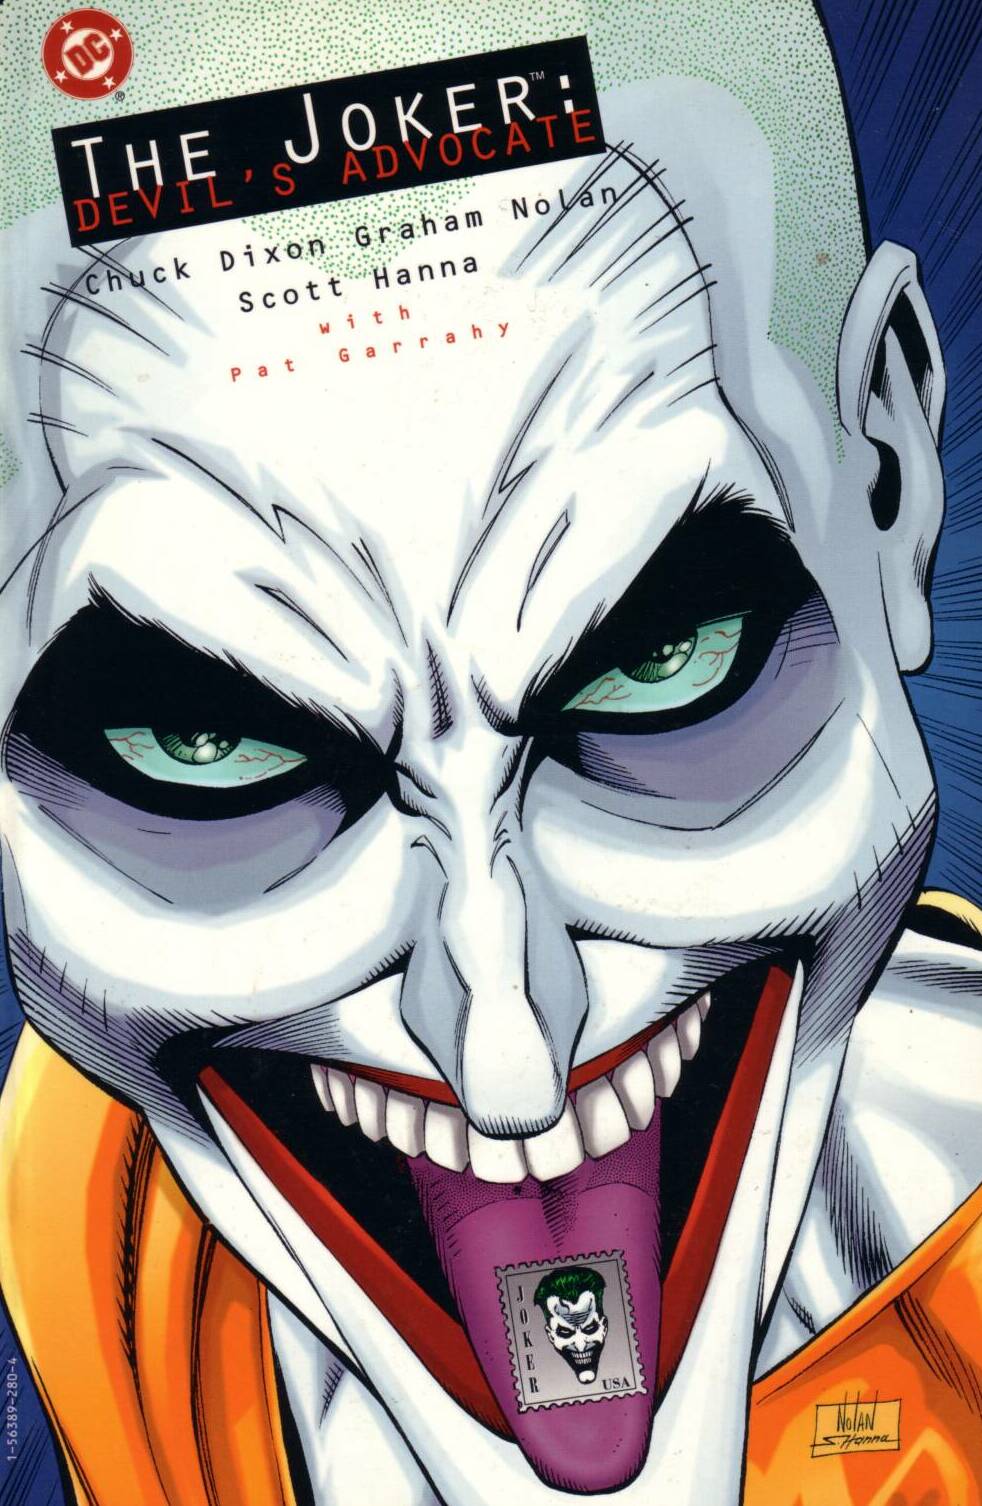 Read online The Joker: Devil's Advocate comic -  Issue # Full - 1